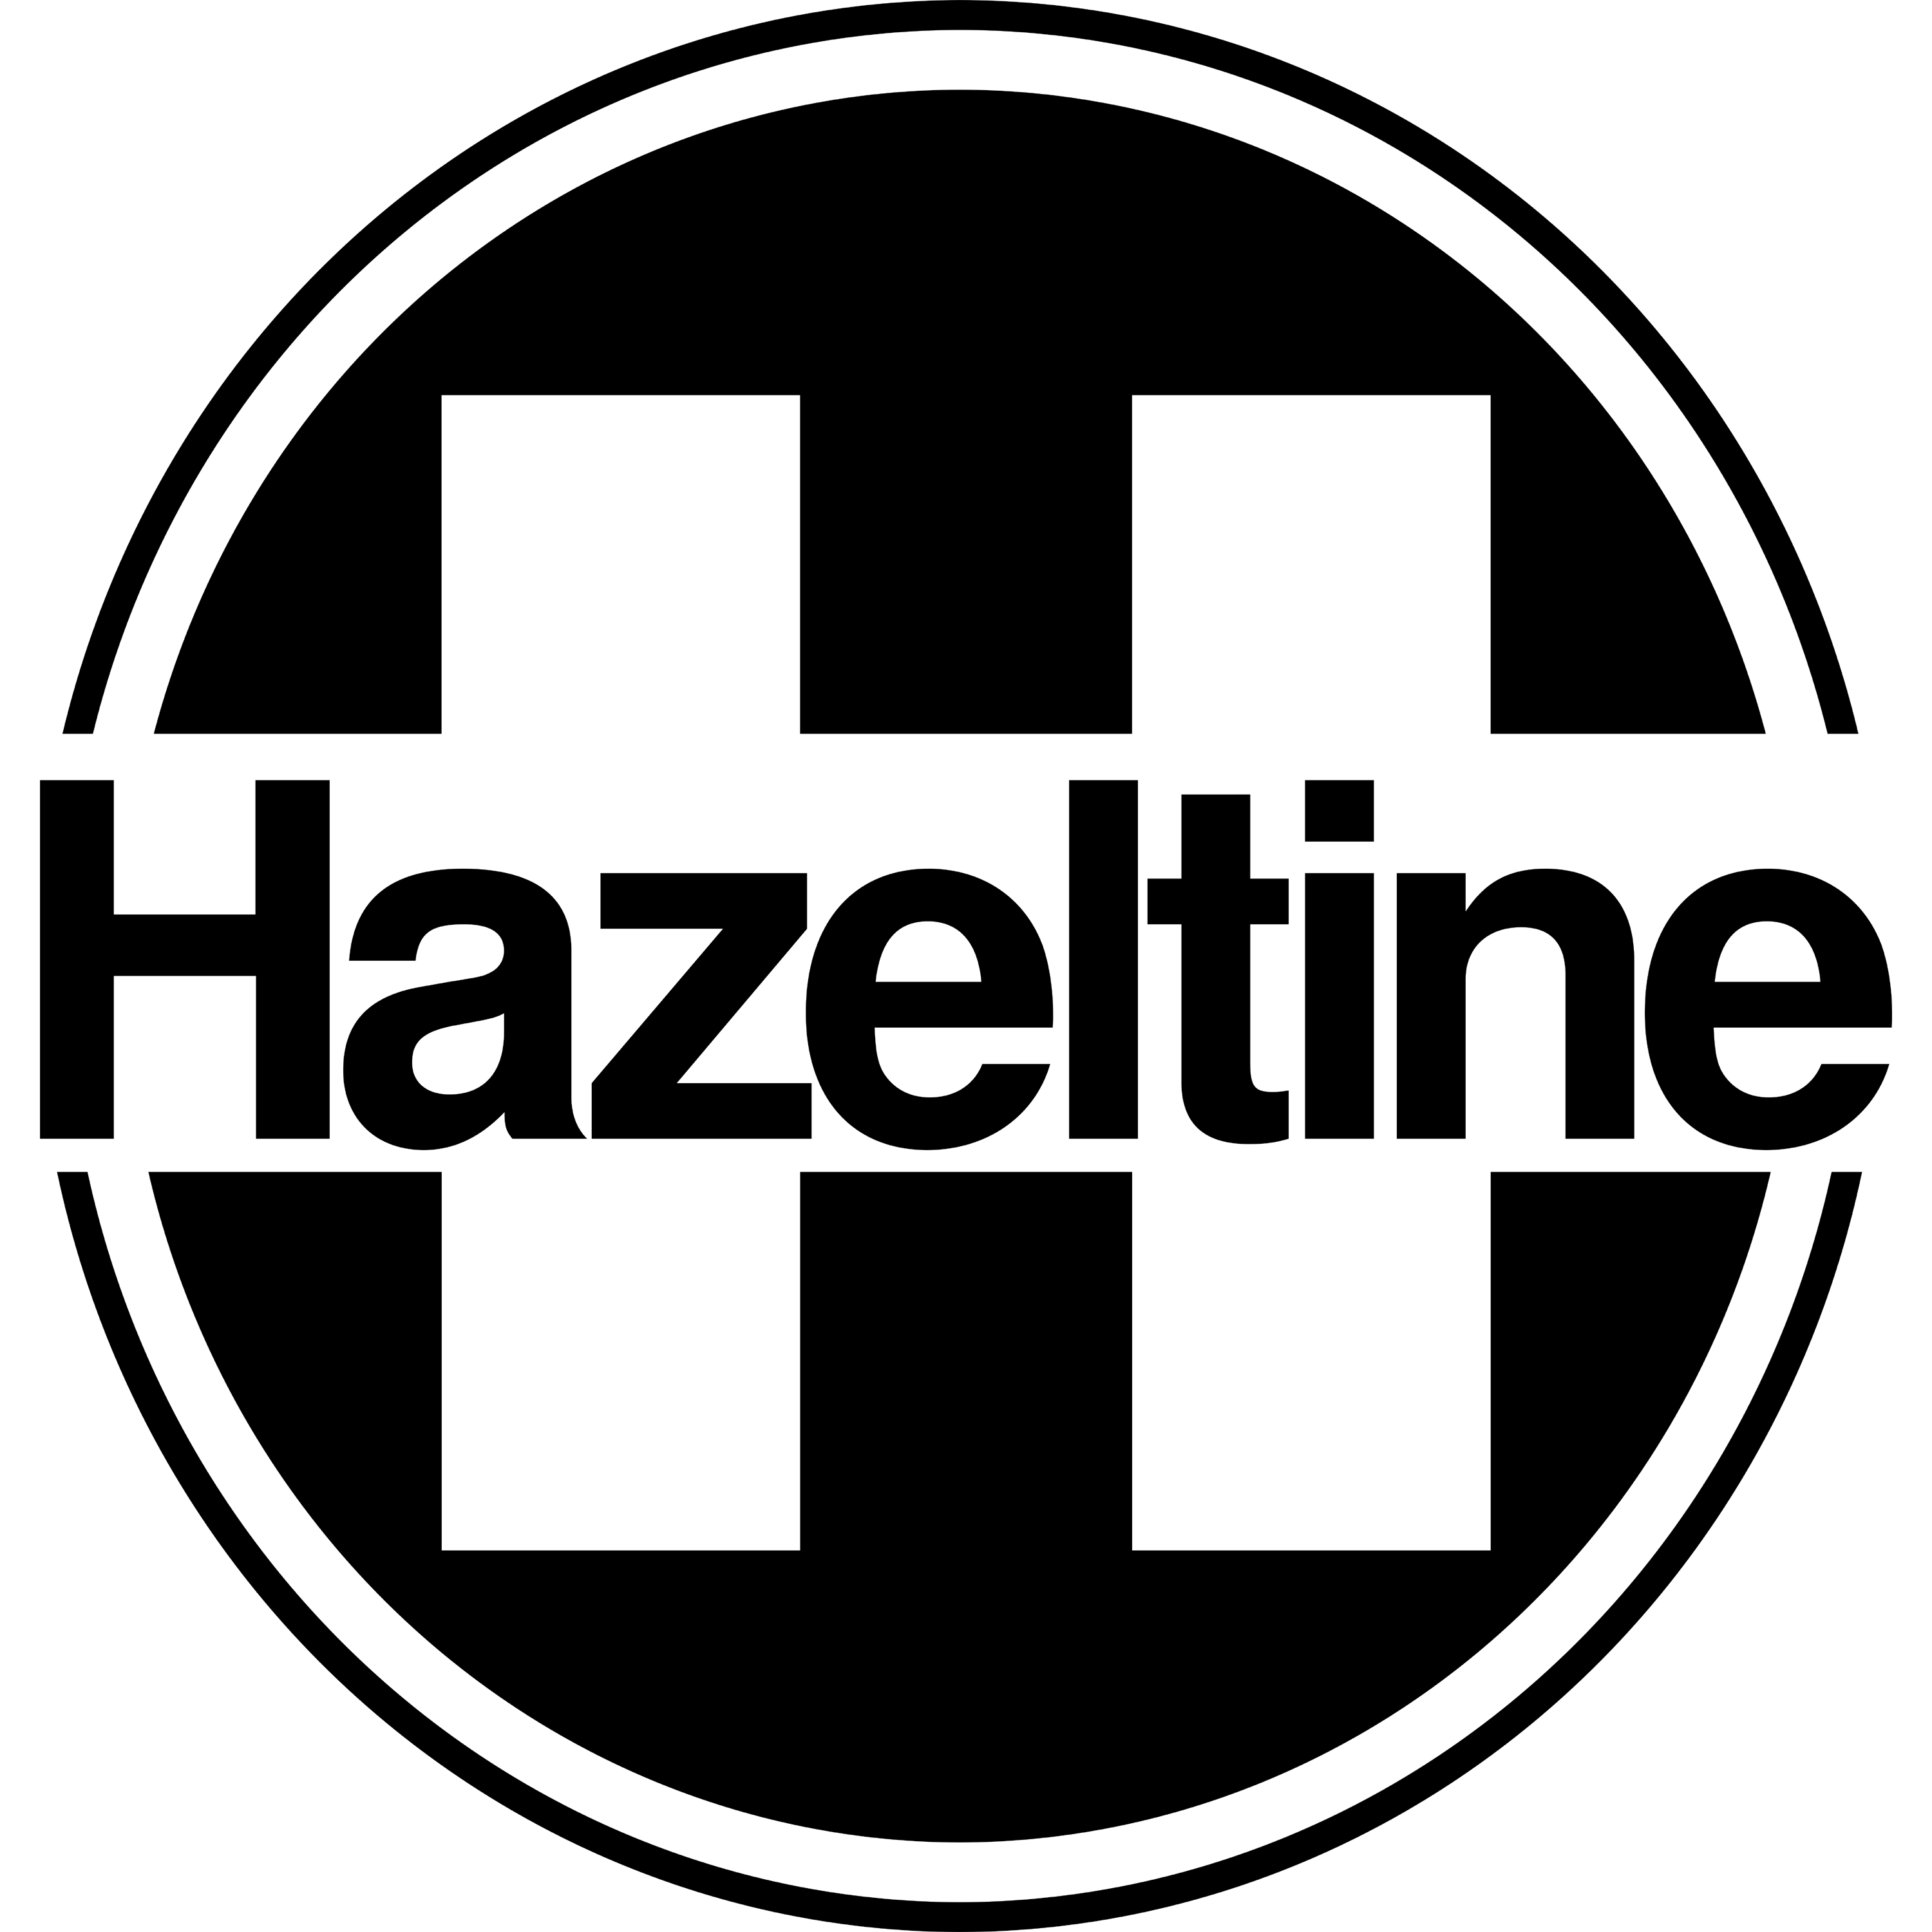 Hazeltine Corporation Logo Transparent Image